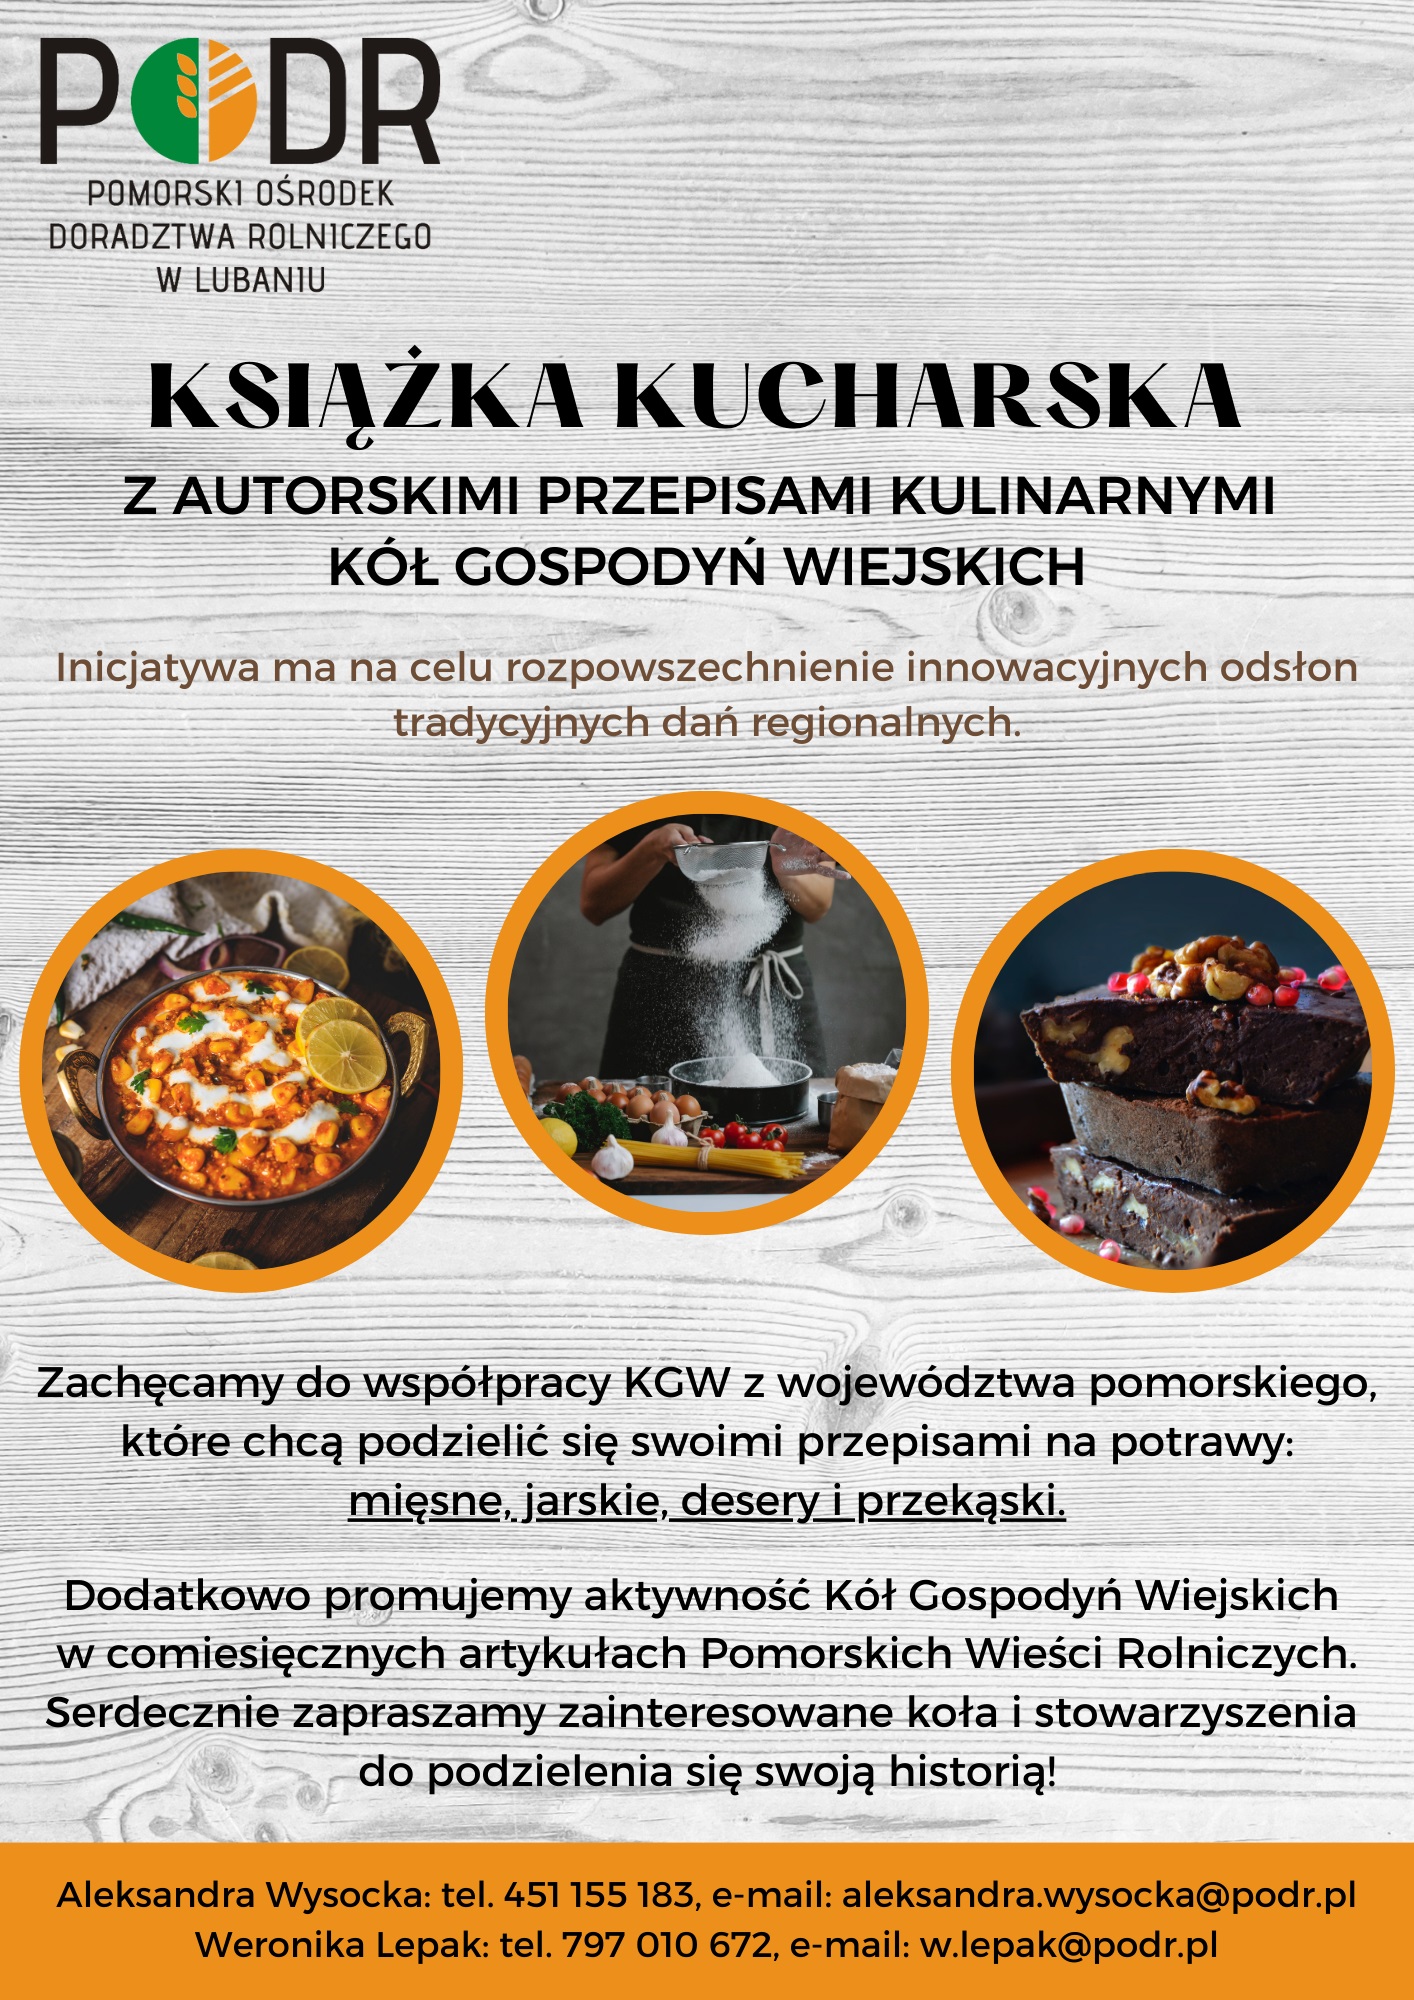 Książka kucharska - zaproszenie do współpracy